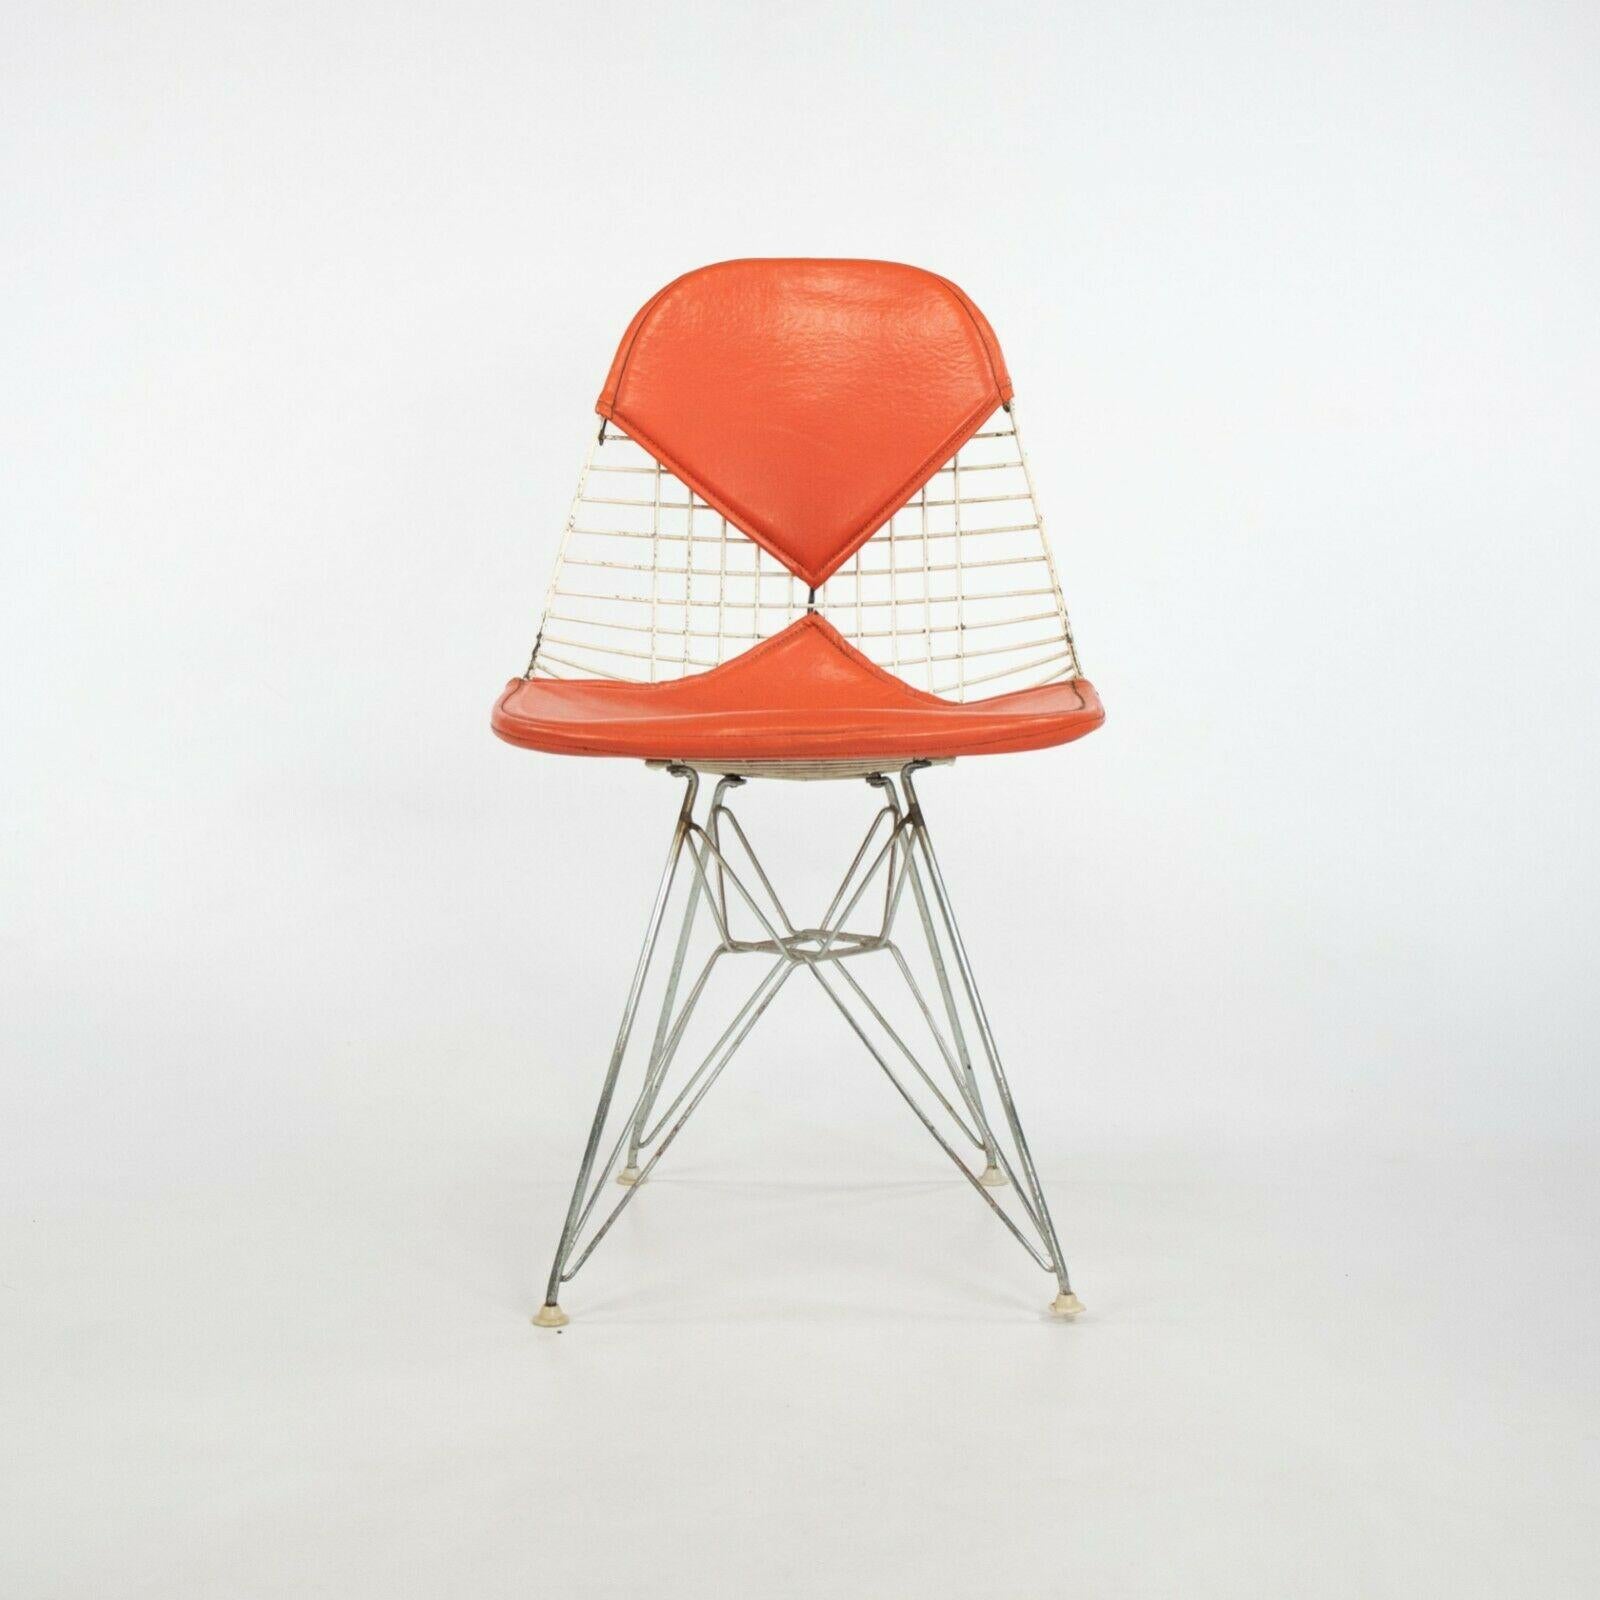 Zum Verkauf steht ein seltenes Set von 1957 Eames DKR-2 Dining / Side Chairs von Herman Miller mit original Redwood Avenue Labels. Diese Stühle sind in sehr gutem bis ausgezeichnetem Vintage-Zustand und weisen einige Gebrauchsspuren auf, wie auf den